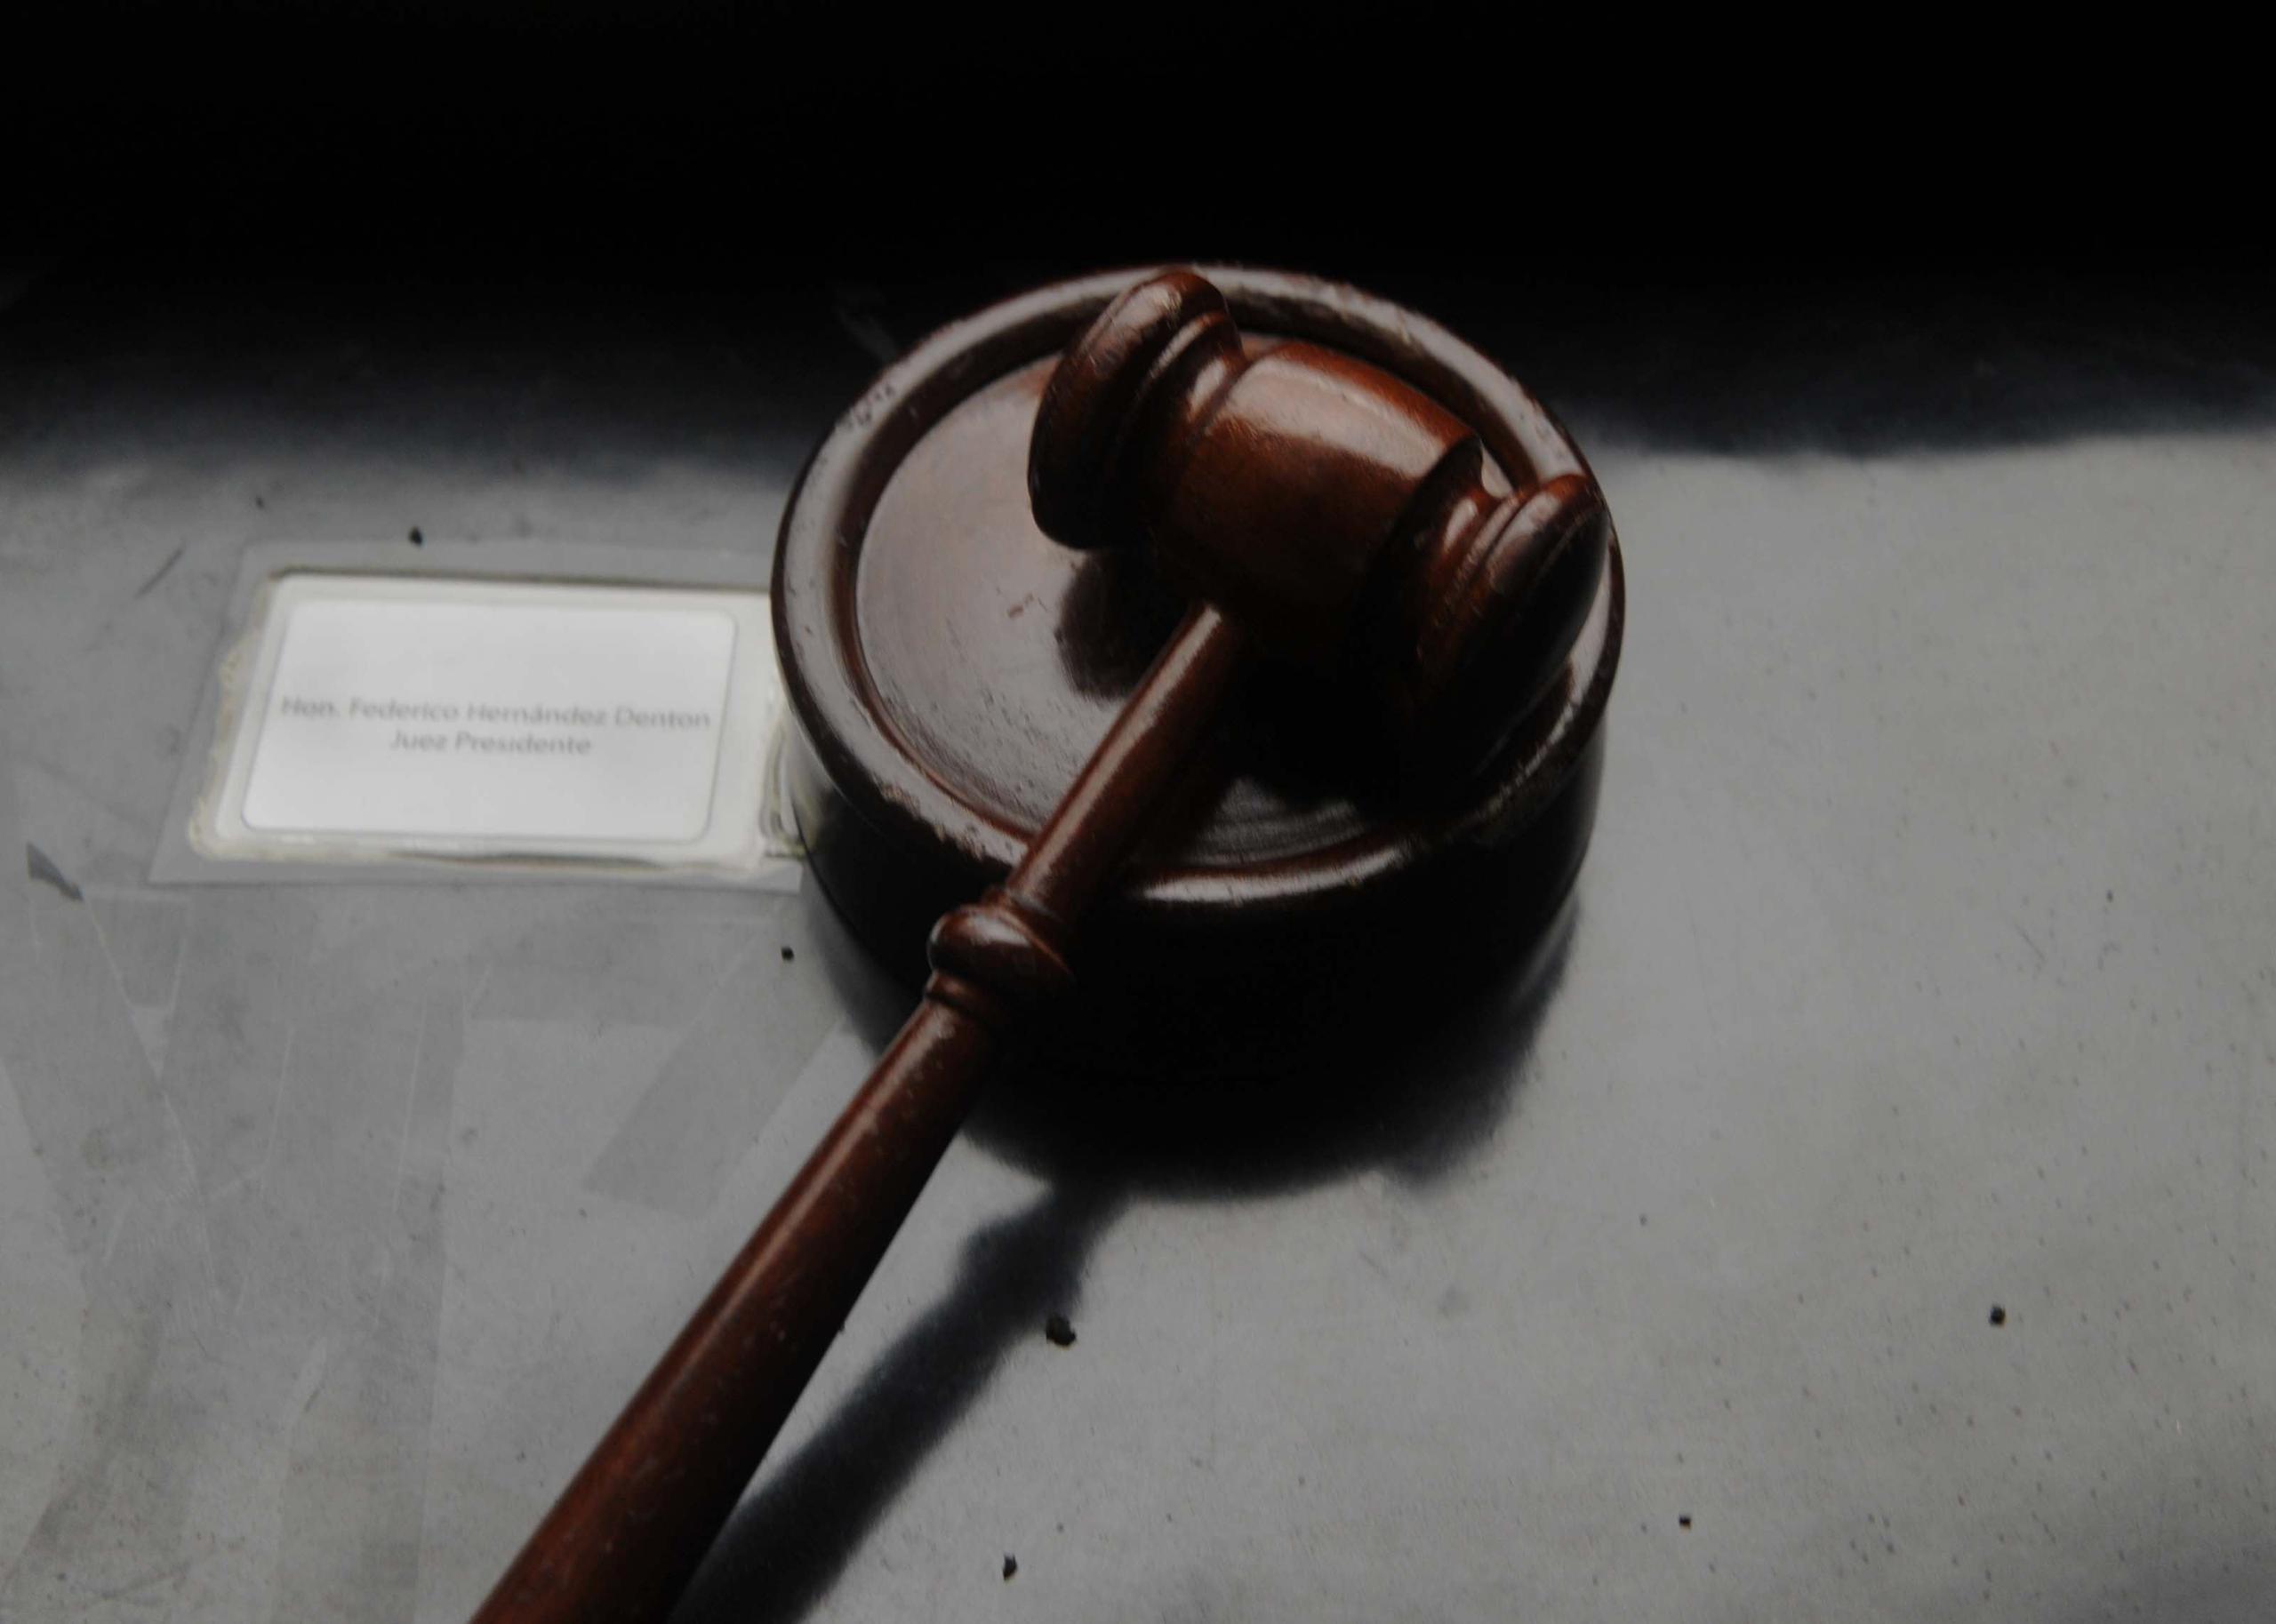 El juicio fue en el Tribunal de Primera Instancia de Arecibo. (GFR Media)